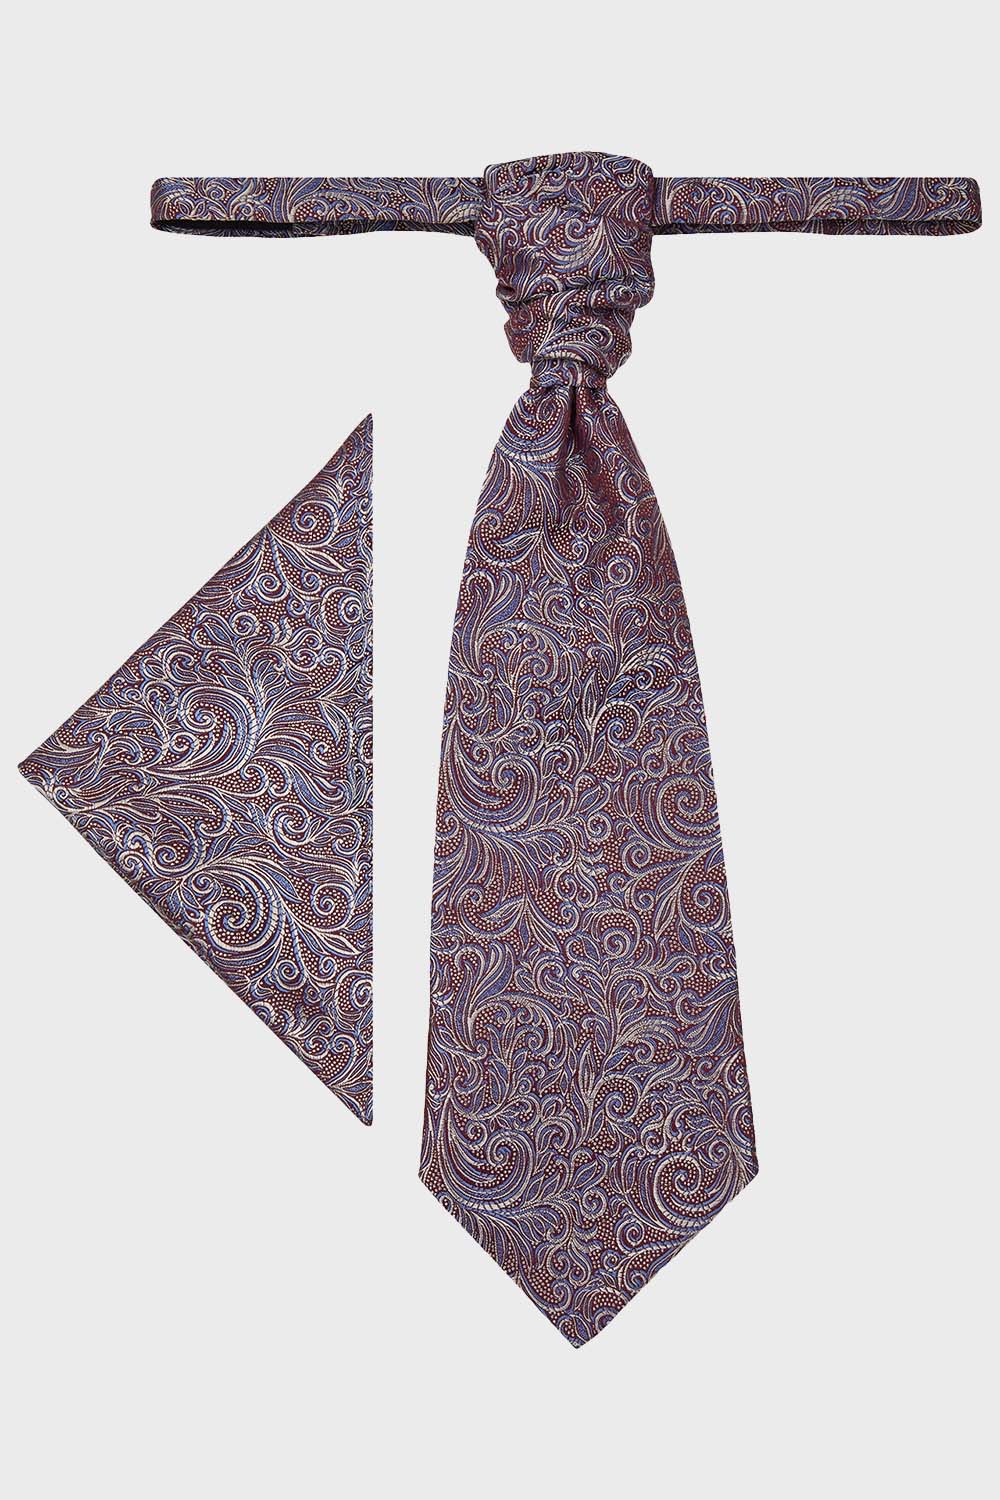 WILVORST bordó francia nyakkendő és díszzsebkendő 417120-55